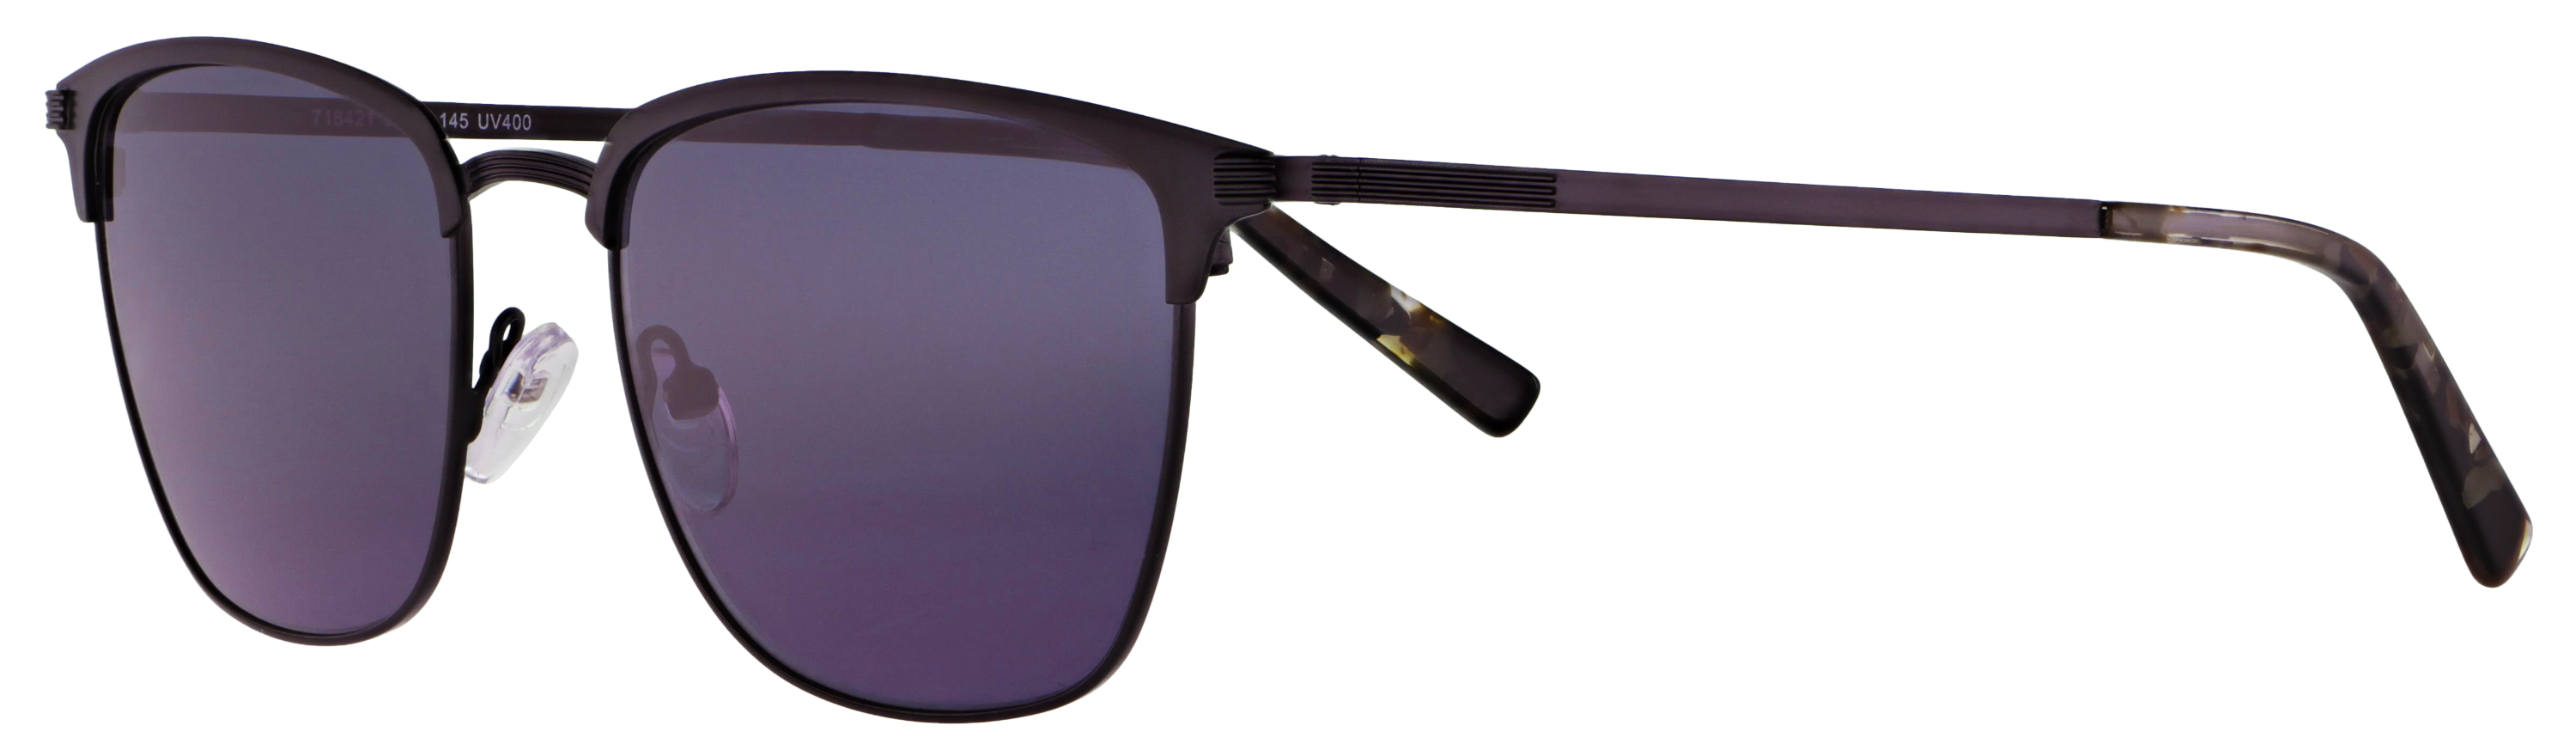 Das Bild zeigt die Sonnenbrille 718421 von der Marke Abele Optik in schwarz.